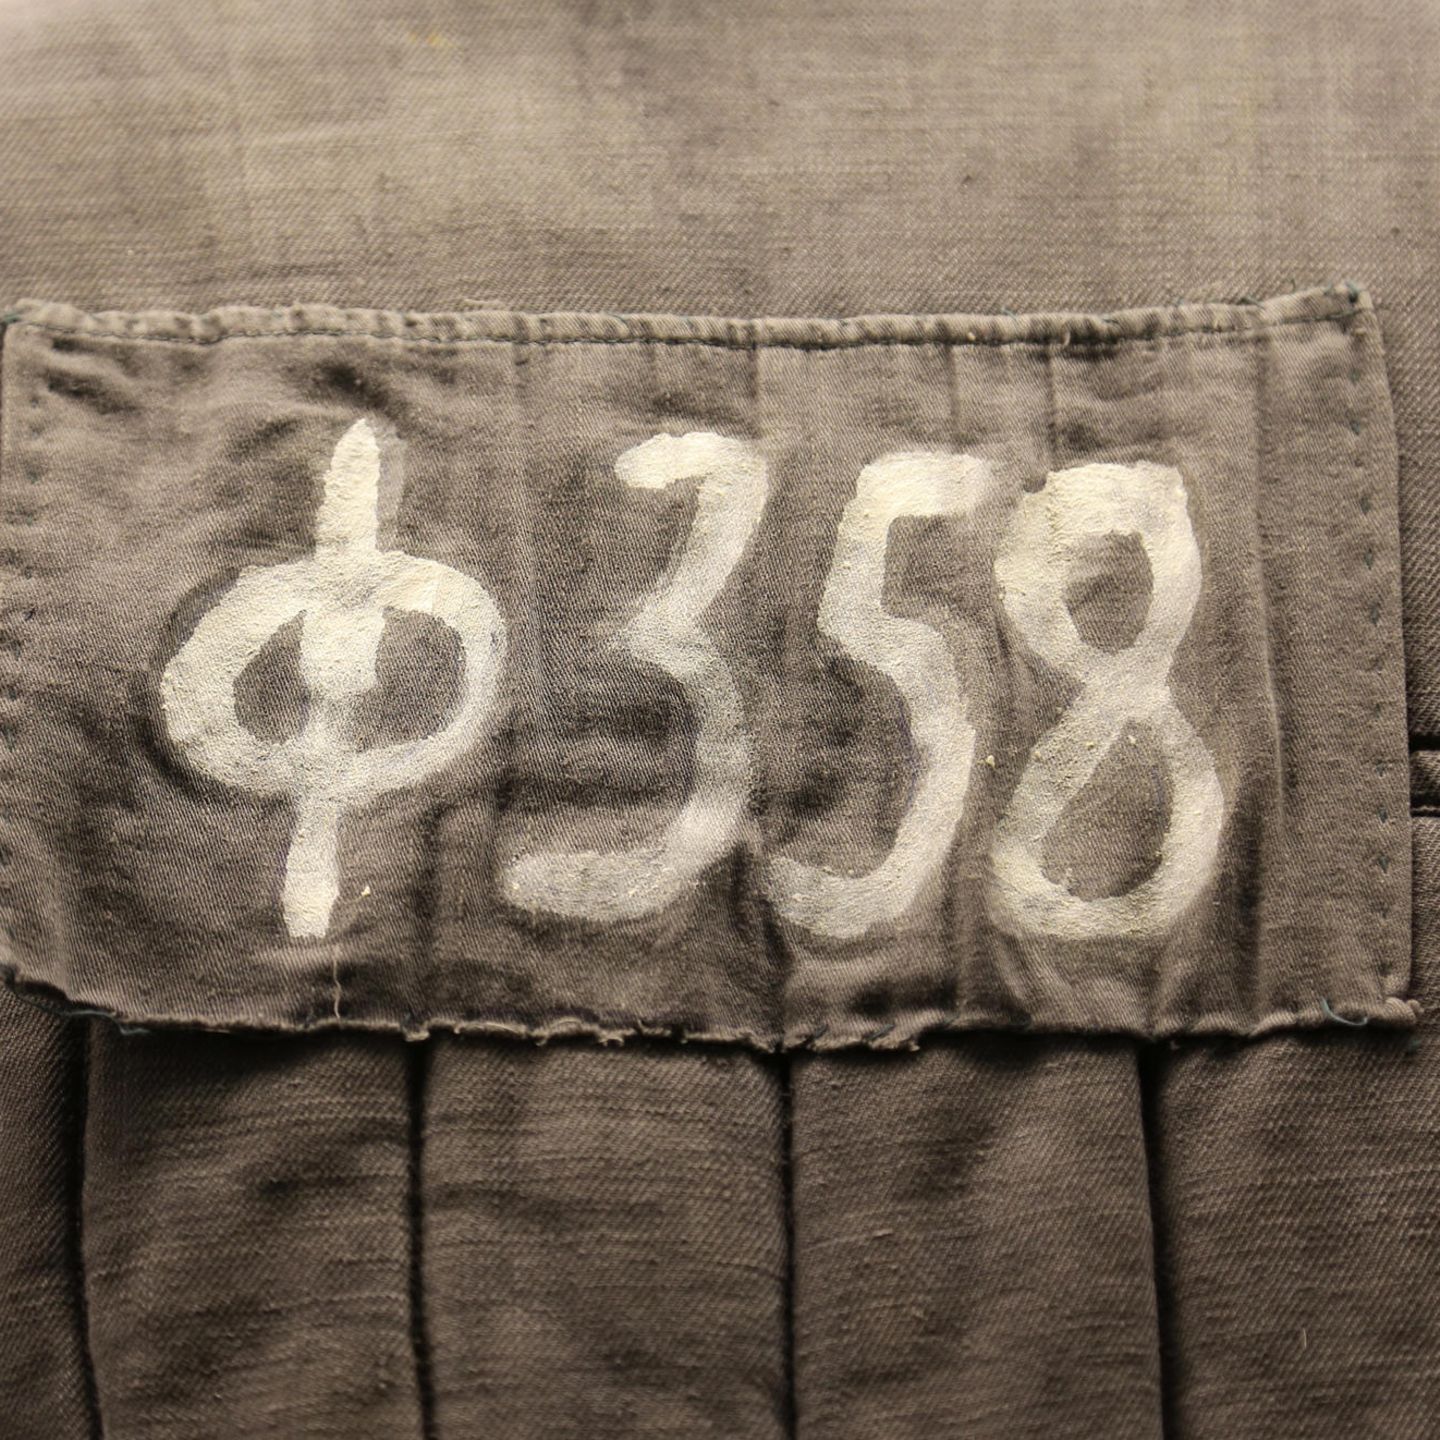 Nummer auf einer sowjetischen Häftlingsjacke